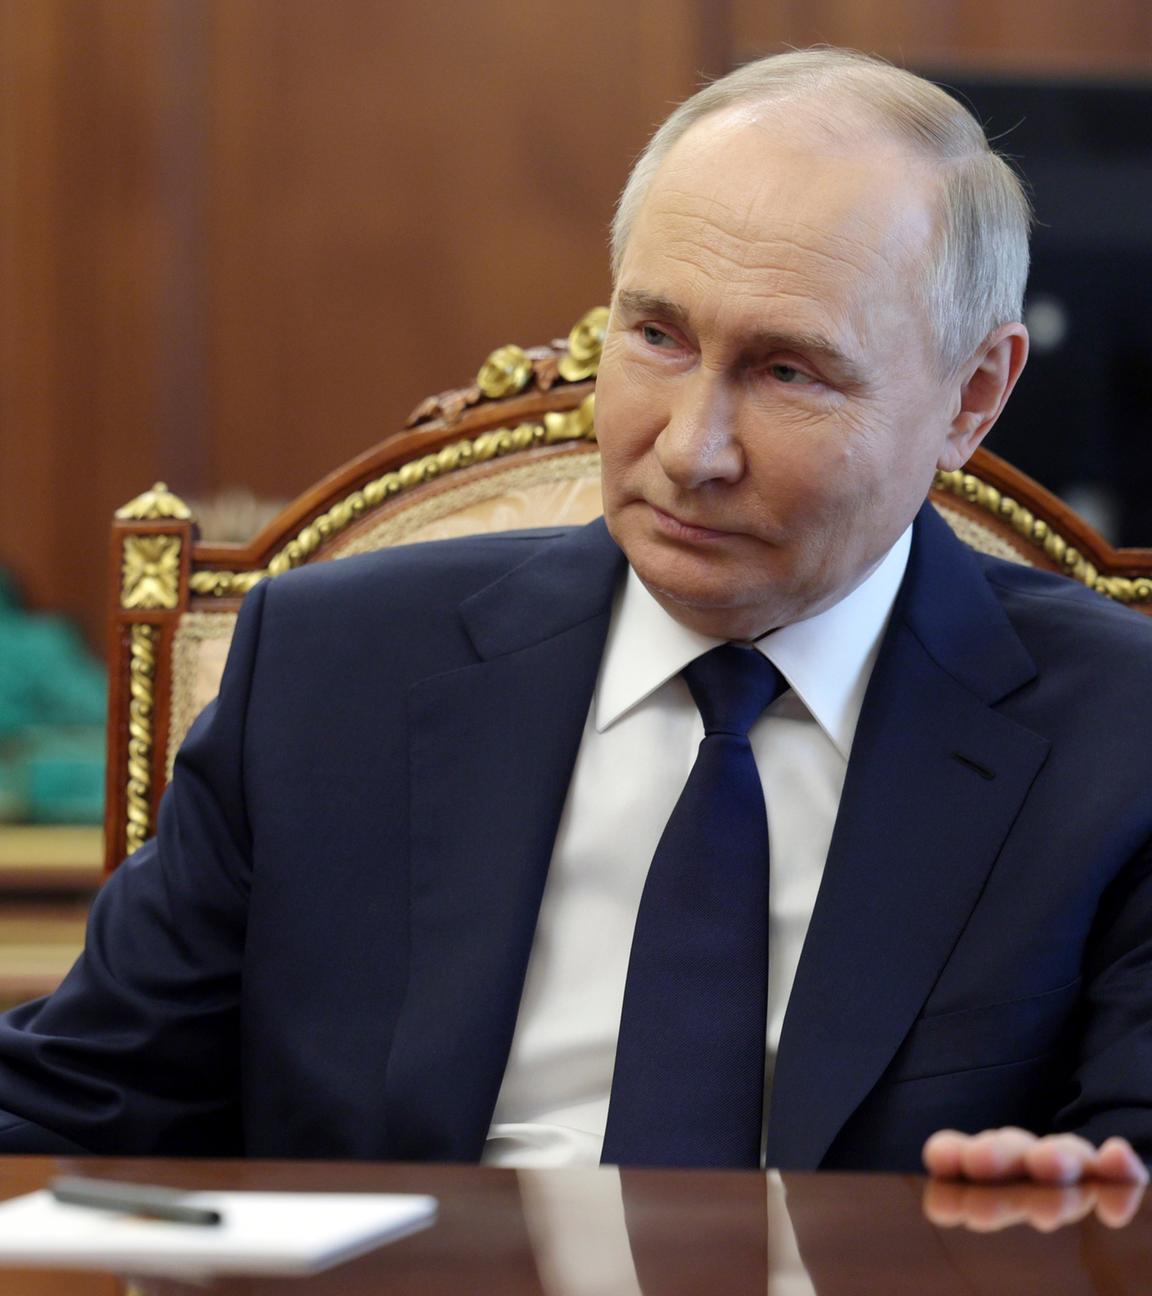 Zu sehen ist der russische Präsident, Wladimir Putin.